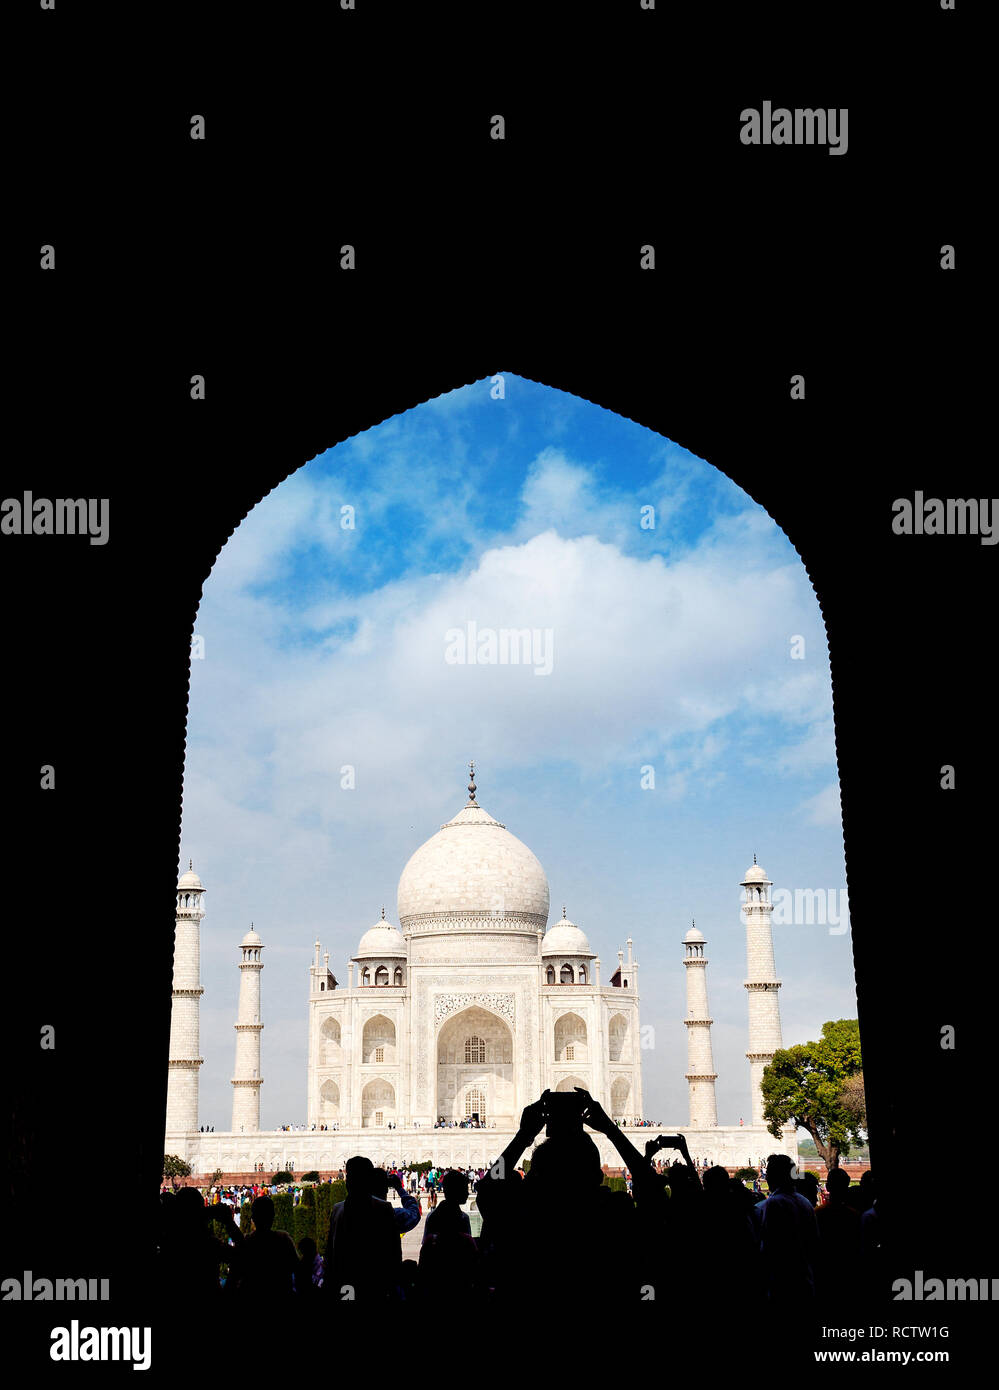 Taj Mahal Blick in Schwarz arch Silhouette mit Tourist, Bild mit Handy in Agra, Uttar Pradesh, Indien. Platz kopieren, Buch cover Vorlage. Stockfoto